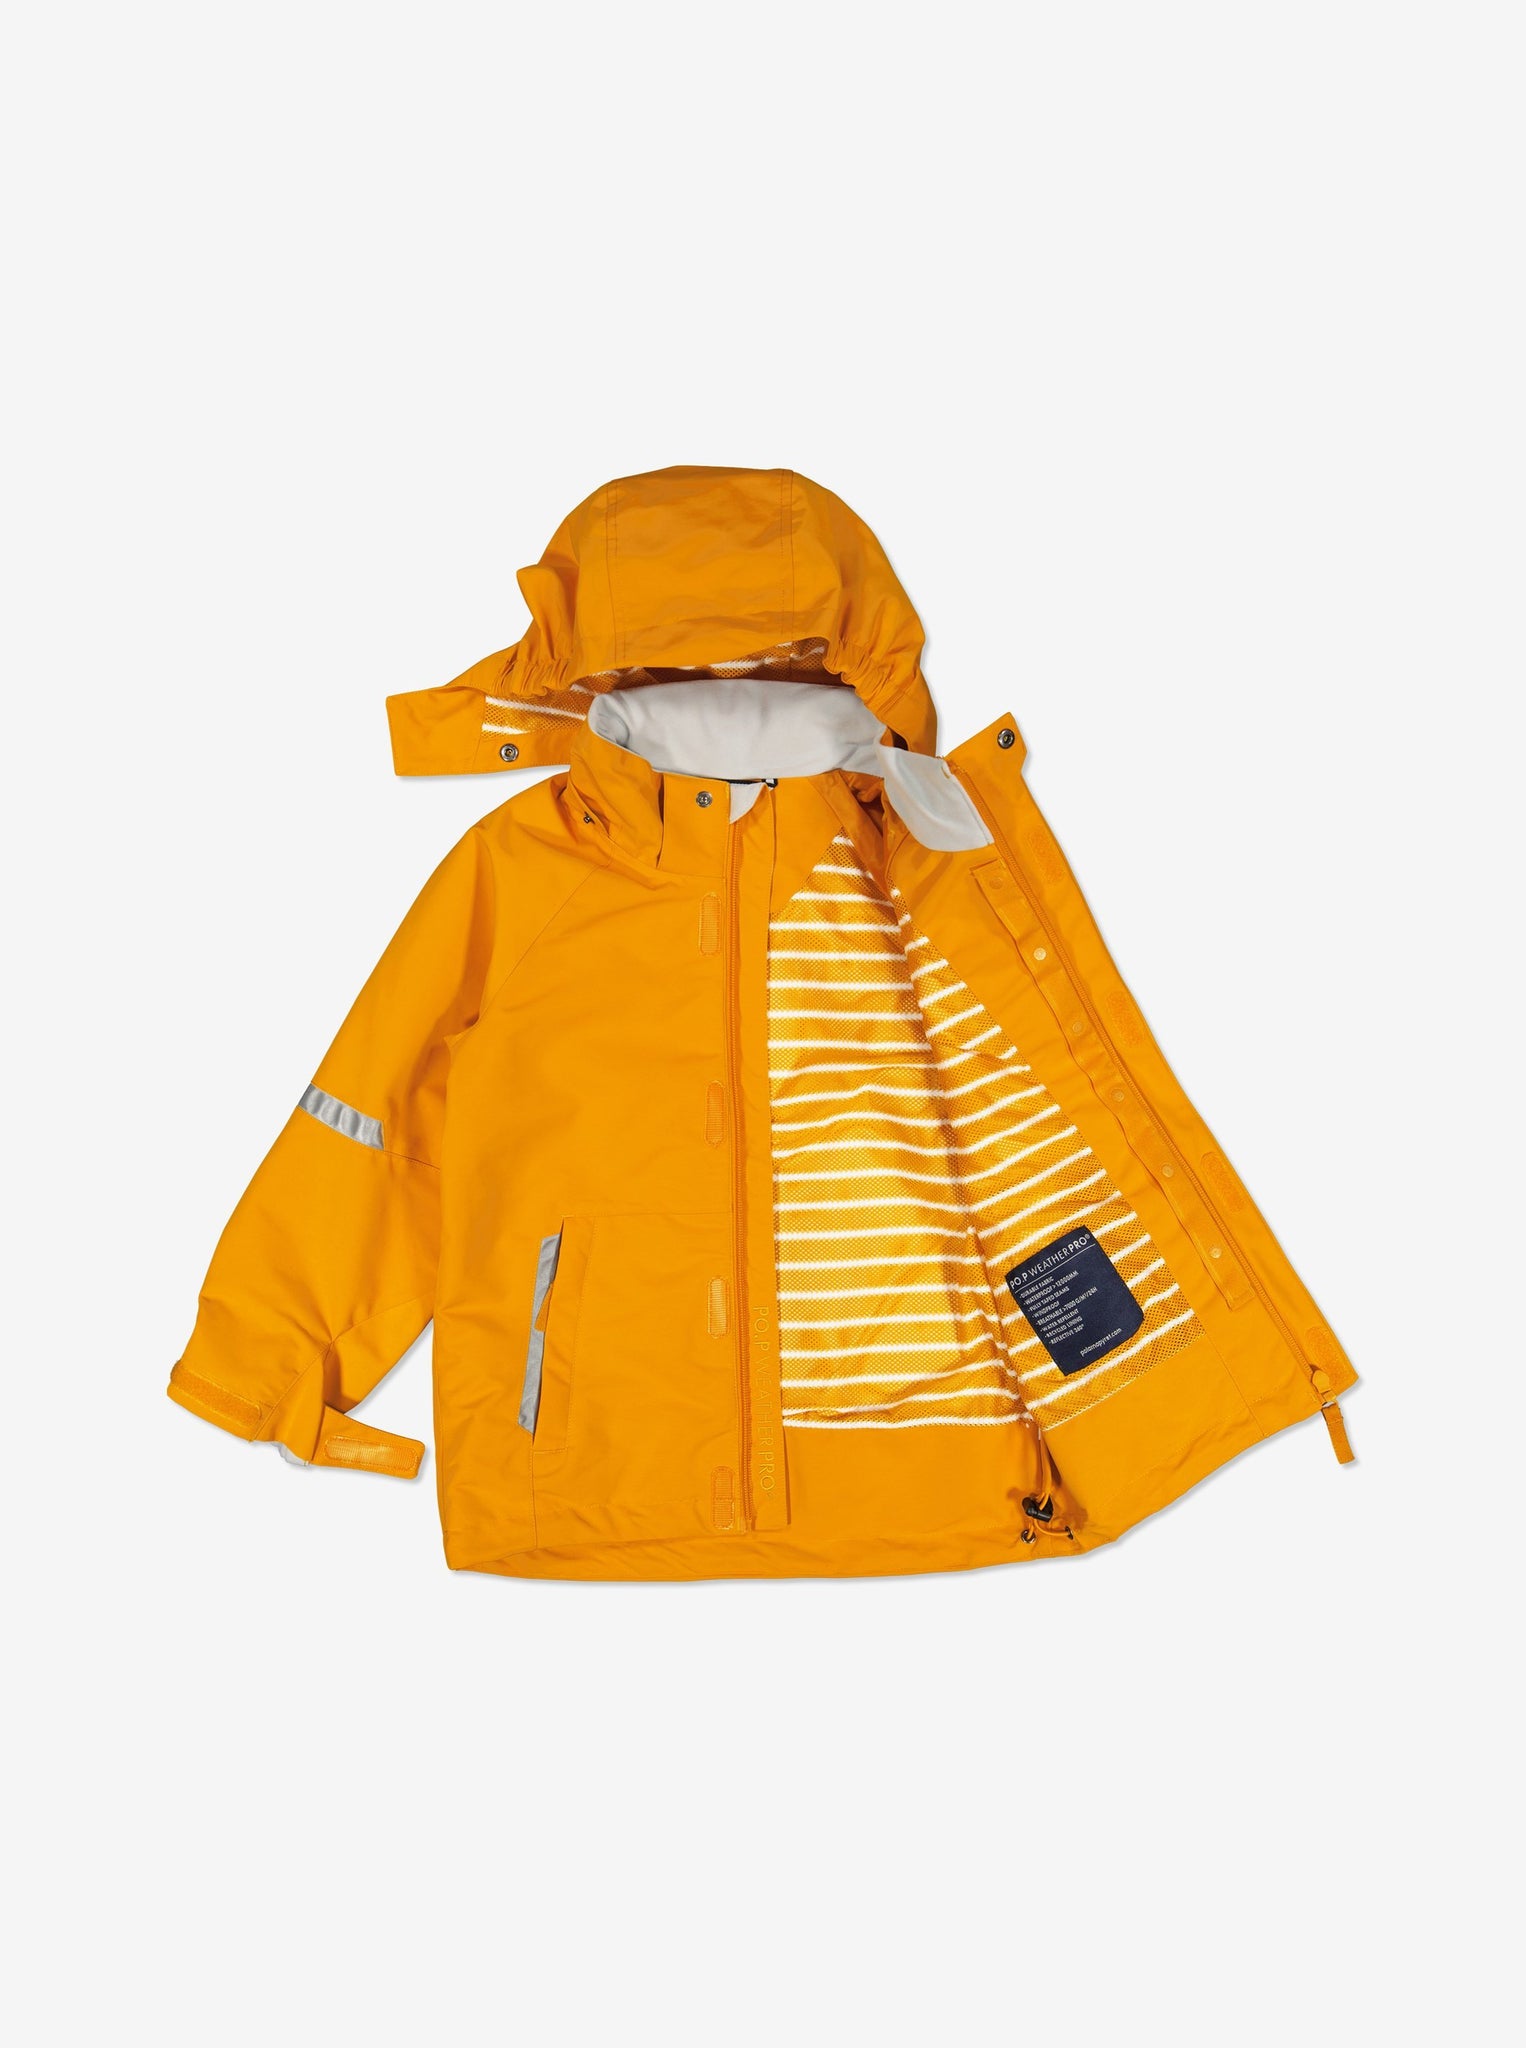 Yellow Kids Waterproof Jacket from Polarn O. Pyret Kidswear.  Waterproof Kids Jacket